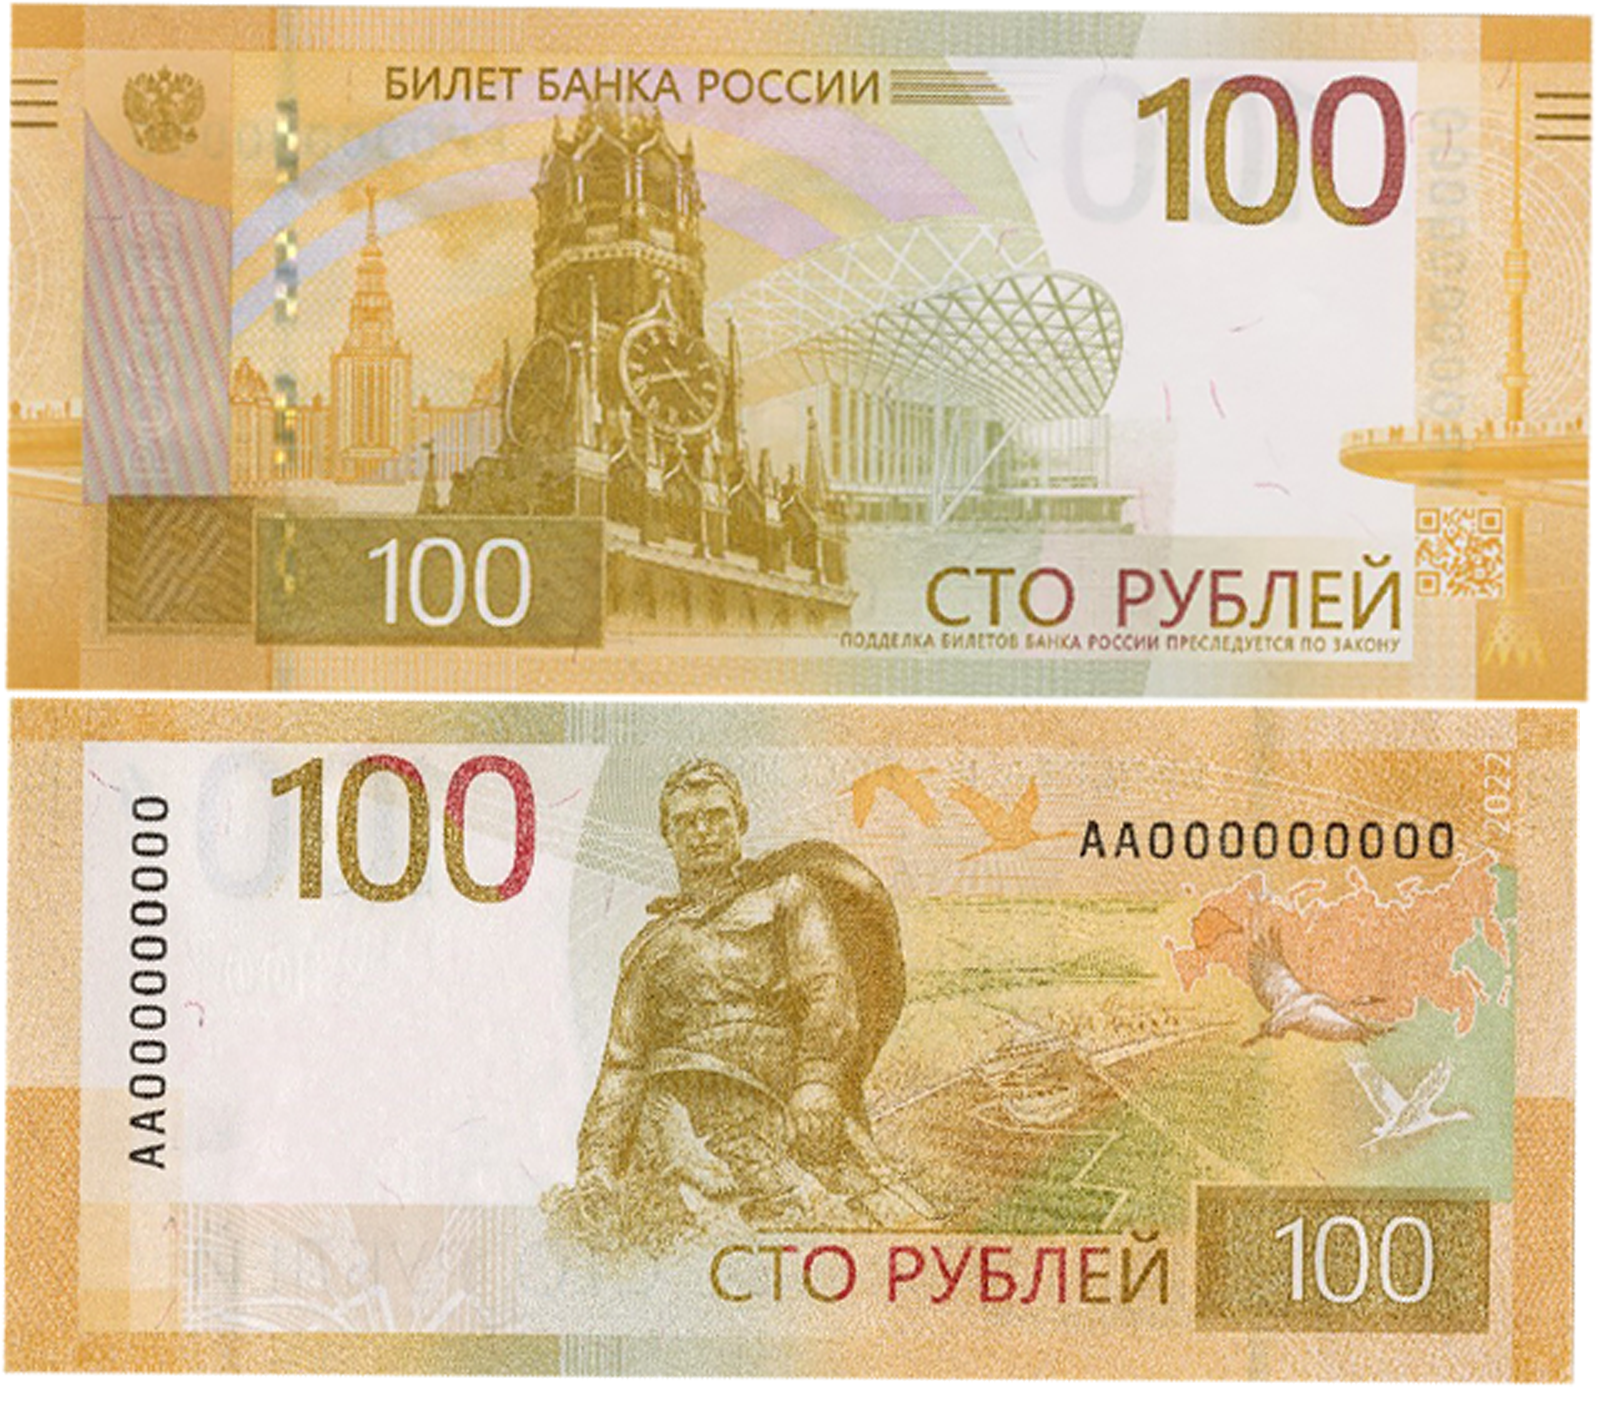 Стоковые фотографии по запросу 100 рублей